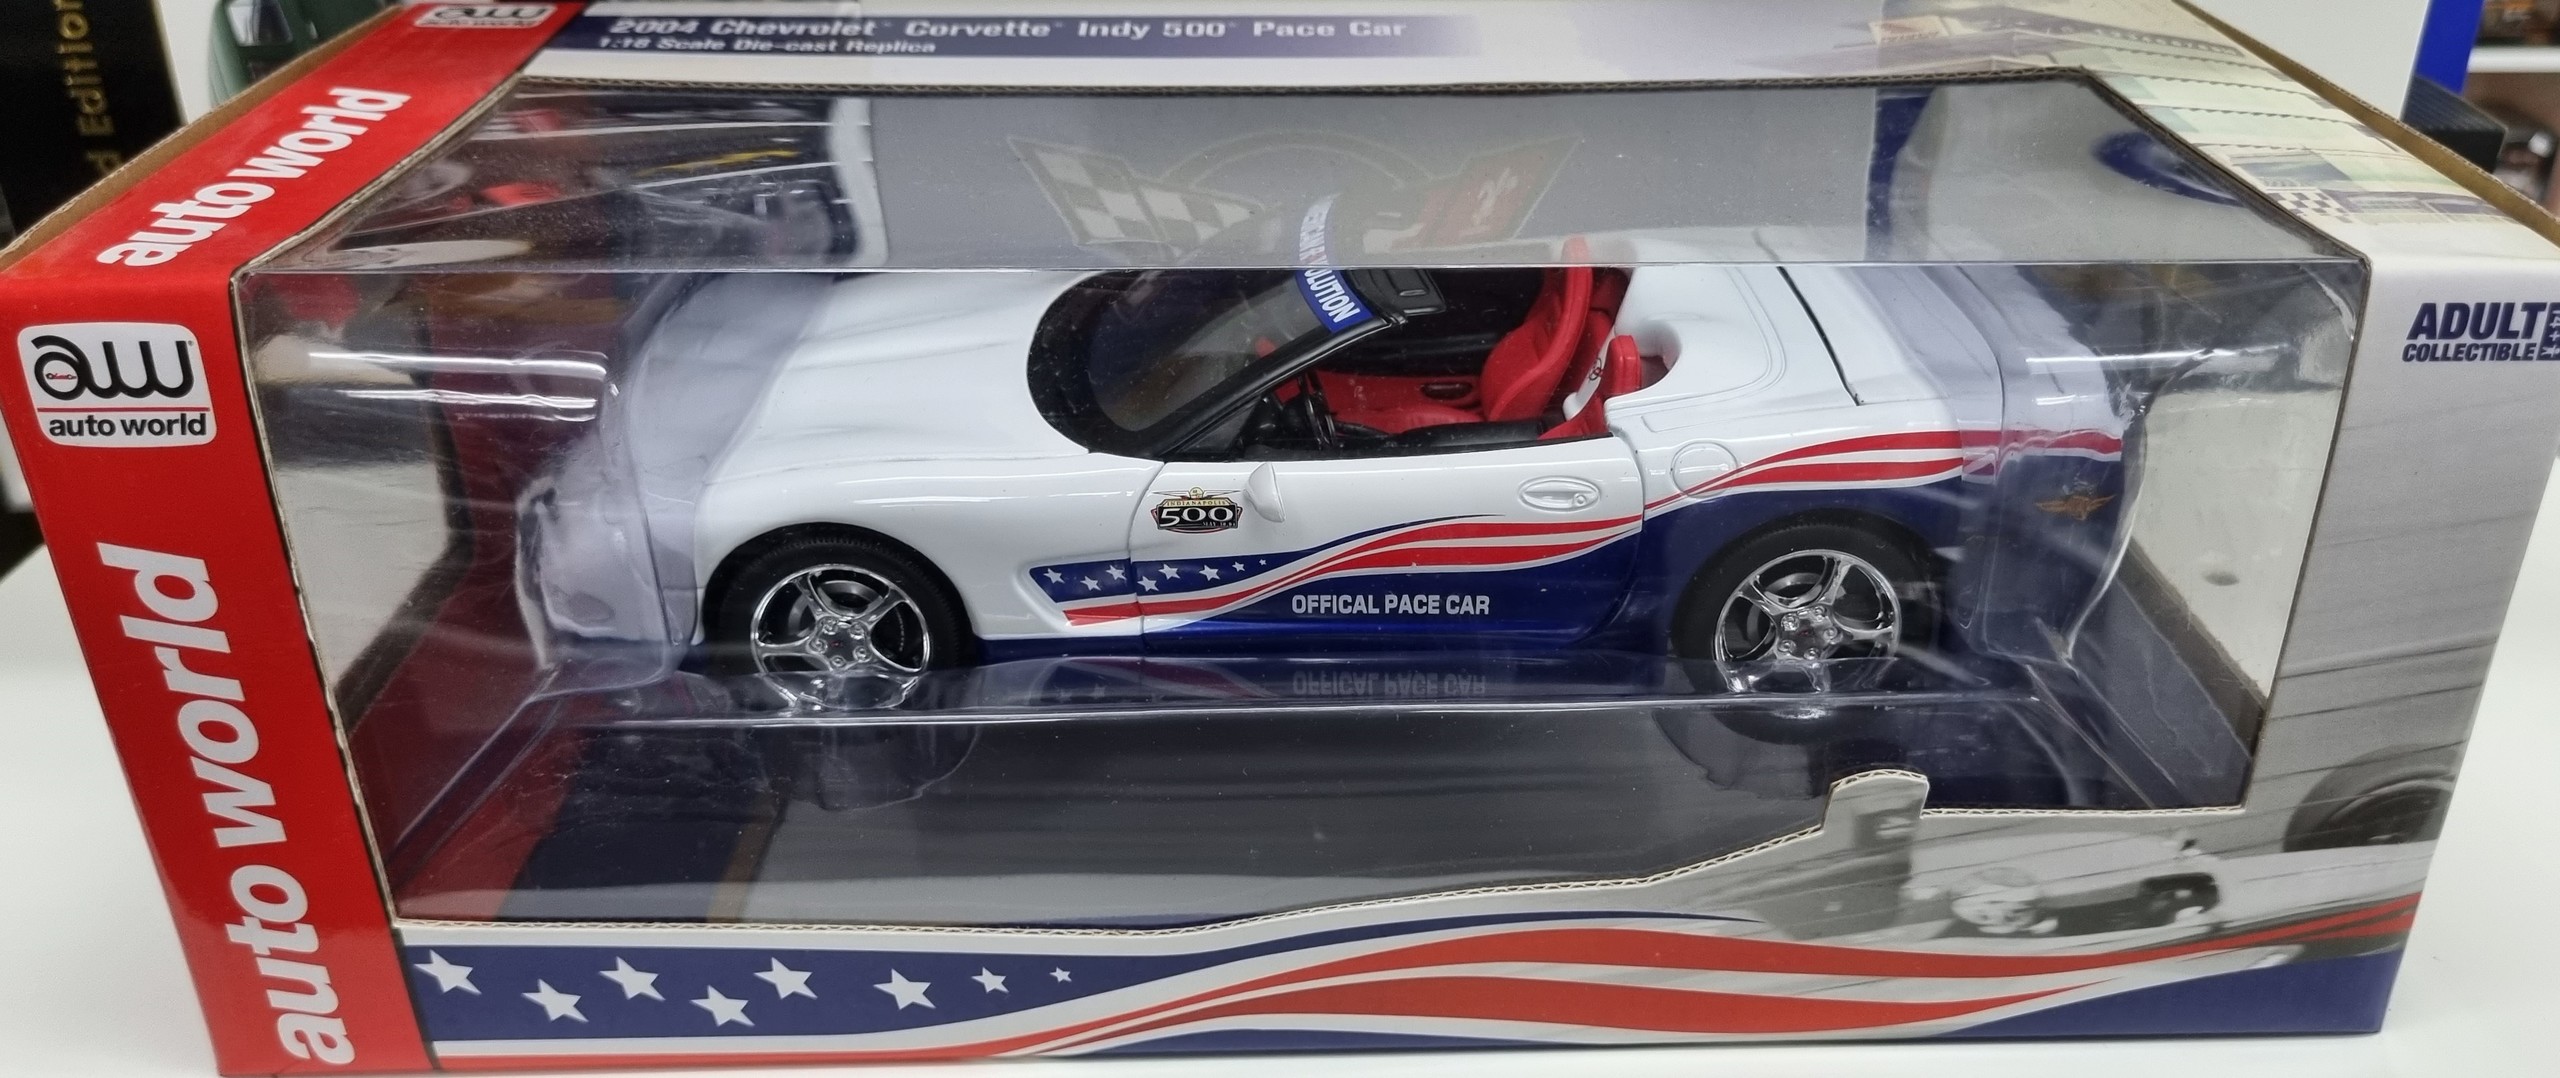 2004 Chevy Corvette Indy 500 Pace Car 1/18 Auto World